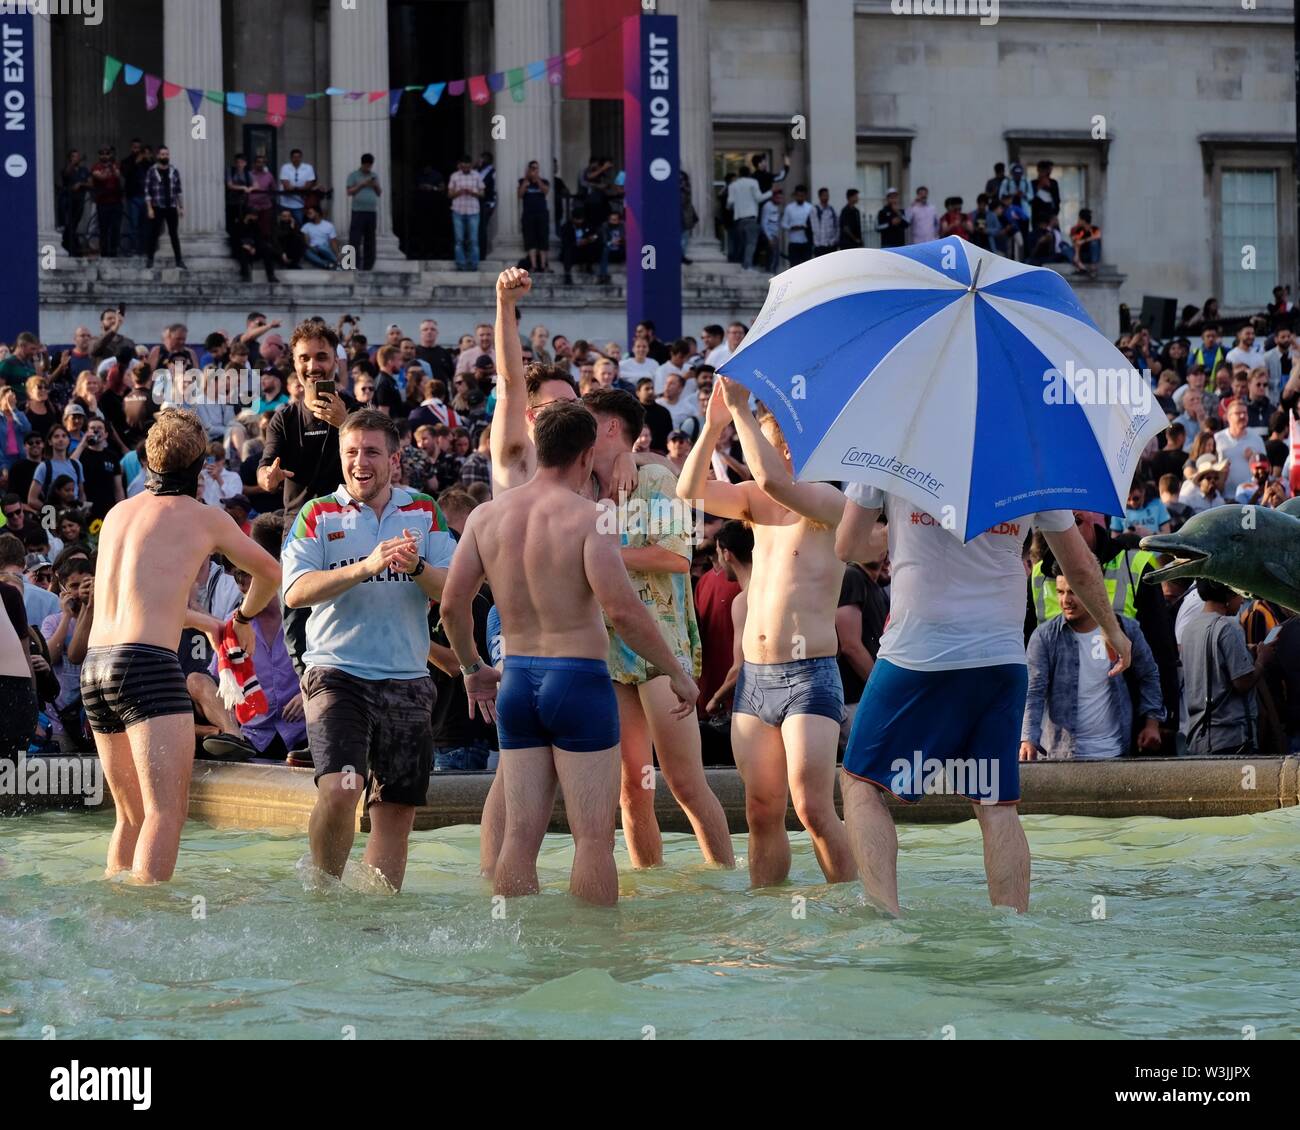 Cricket-Fans feiern den Sieg der englischen Weltmeisterschaft, indem sie in den Brunnen des Trafalgar Square eintauchen, wo das Finale live übertragen wurde. Stockfoto